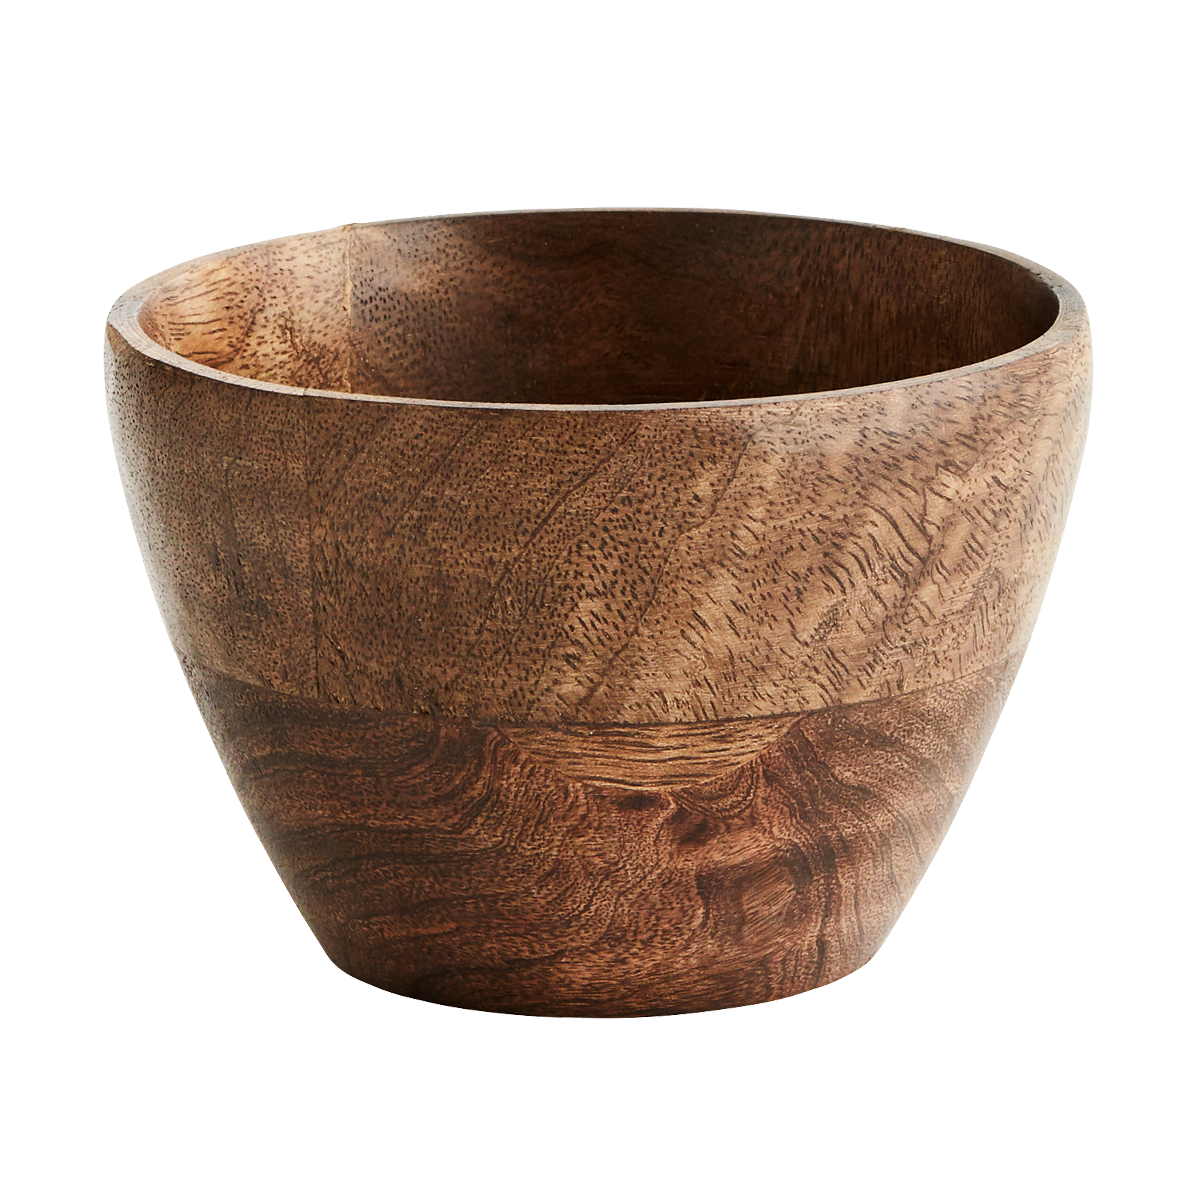 Round wooden bowl